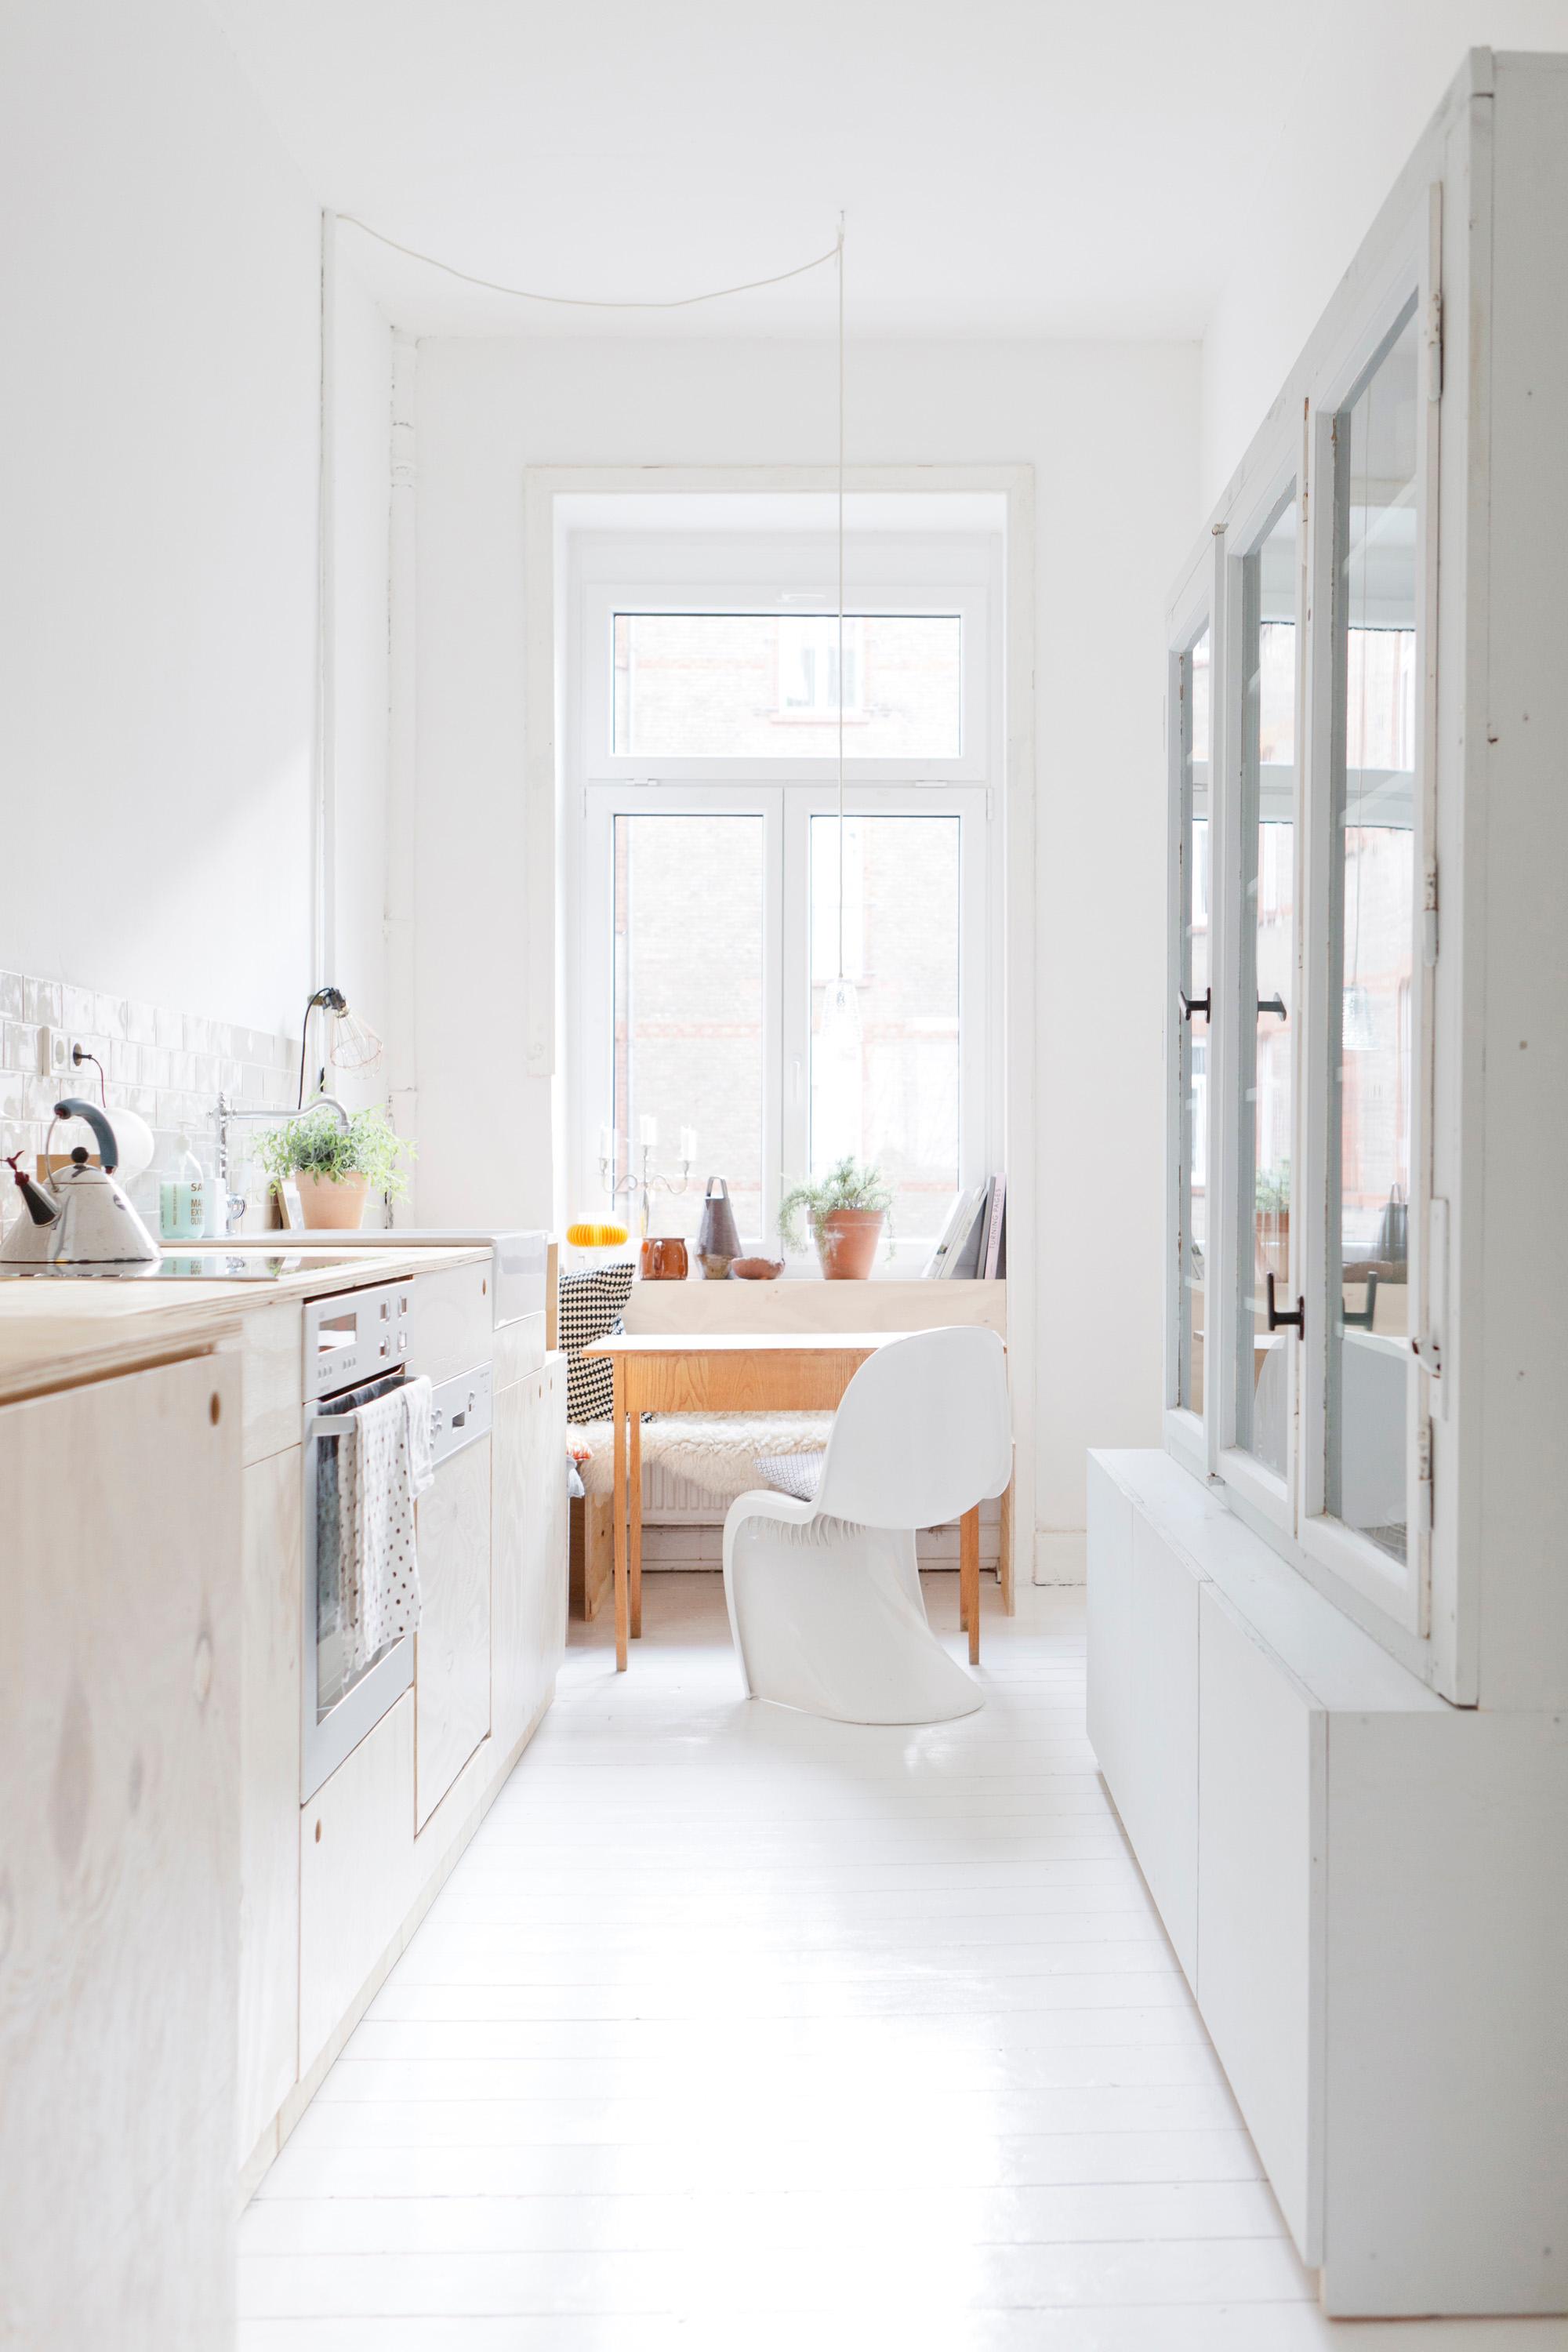 Küche - 2-Raum Apartment #küche #weißeküche #pantryküche #designstuhl #sitzeckeküche #küchenmöbel #büffetschrank #miniküche ©STUDIO OINK